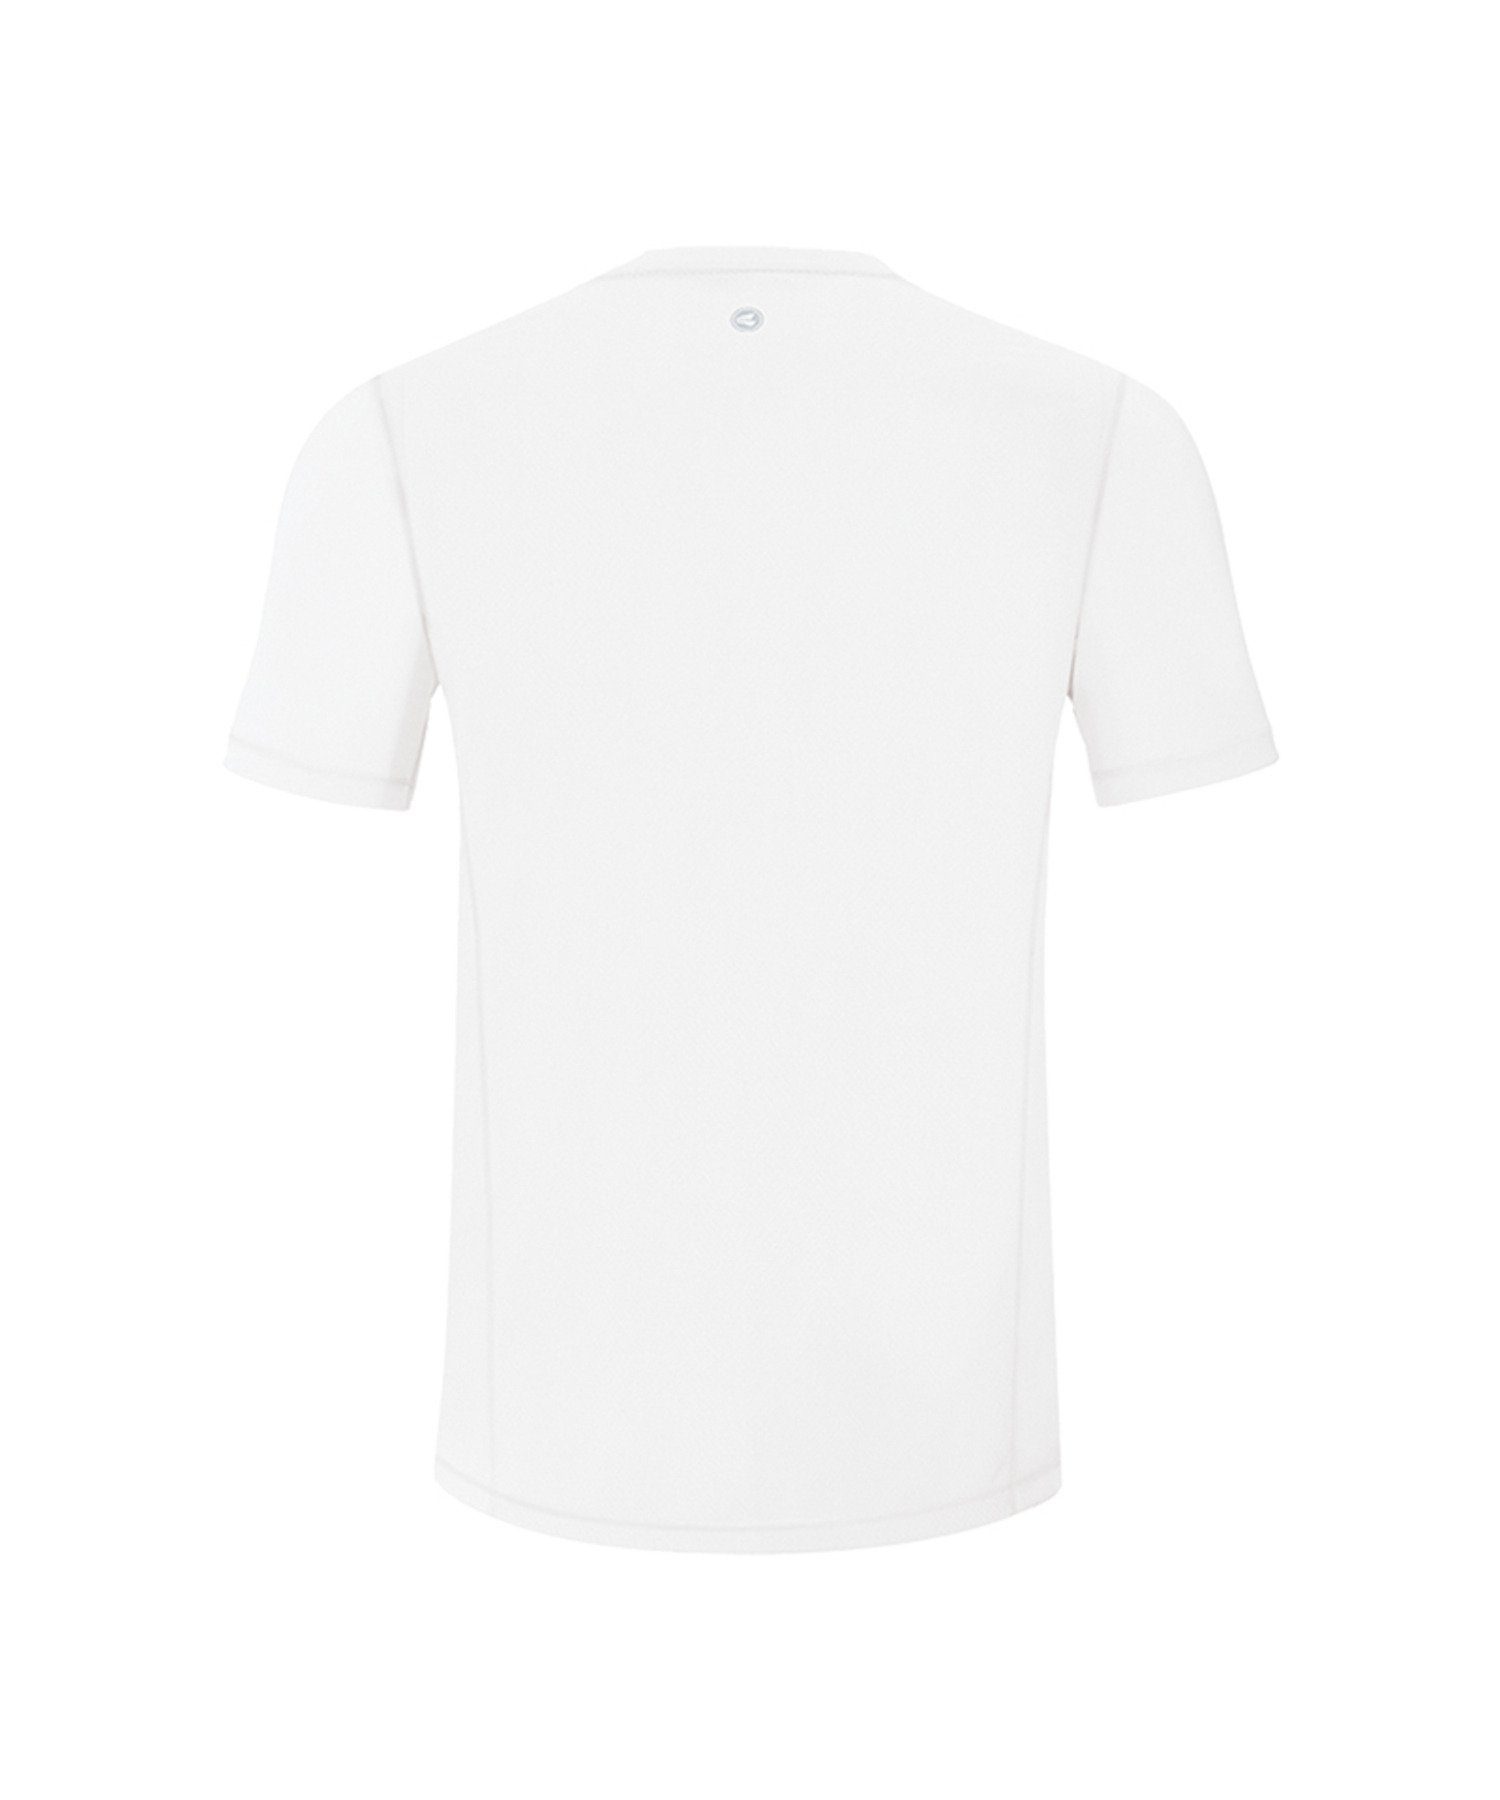 Jako Run Weiss 2.0 T-Shirt default Running T-Shirt